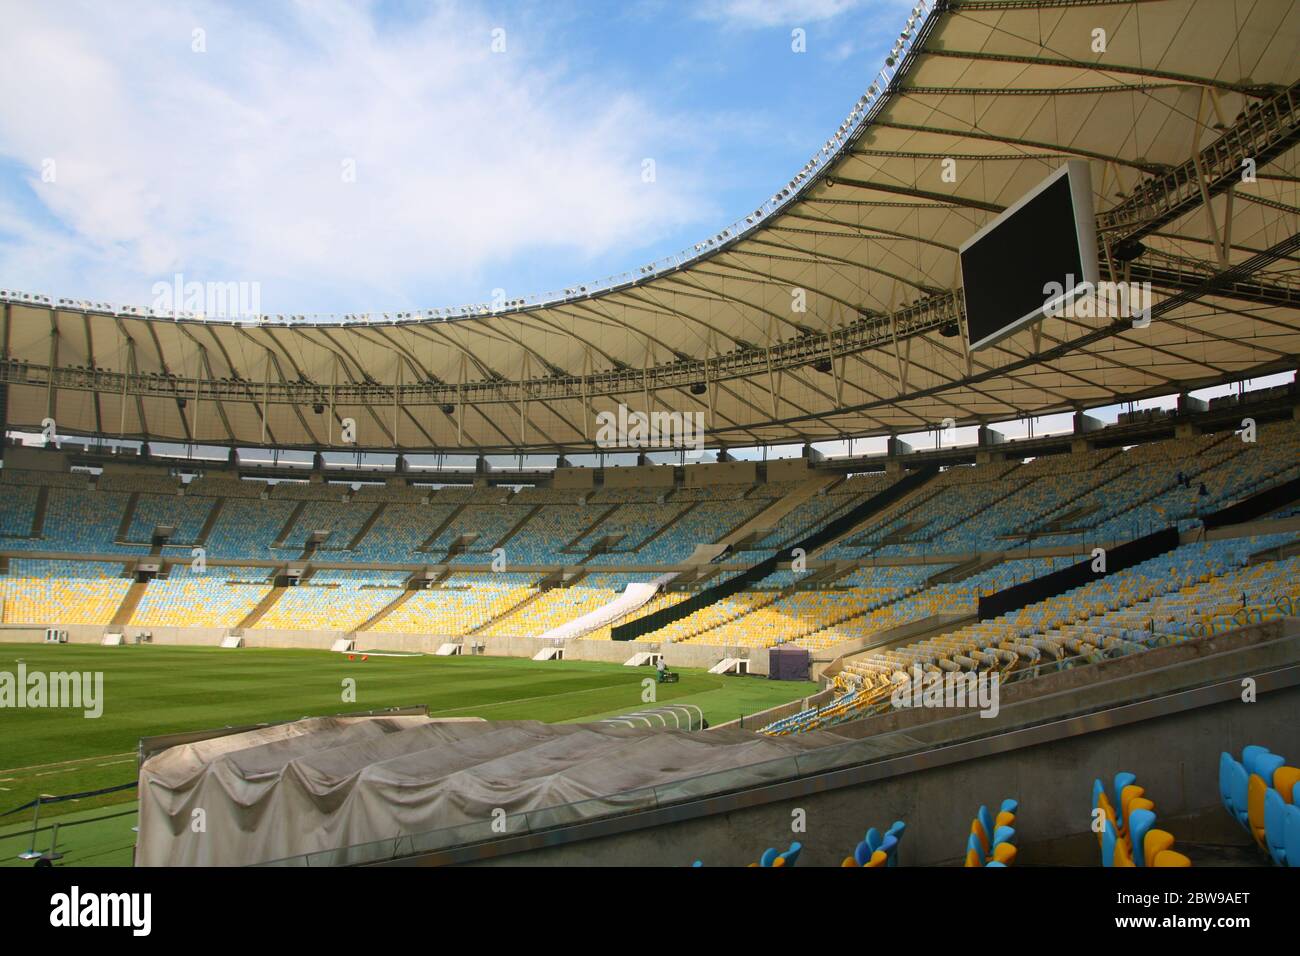 Estádio Jornalista Mário Filho Maracana stadium, Rio de Janeiro, Brazil Stock Photo